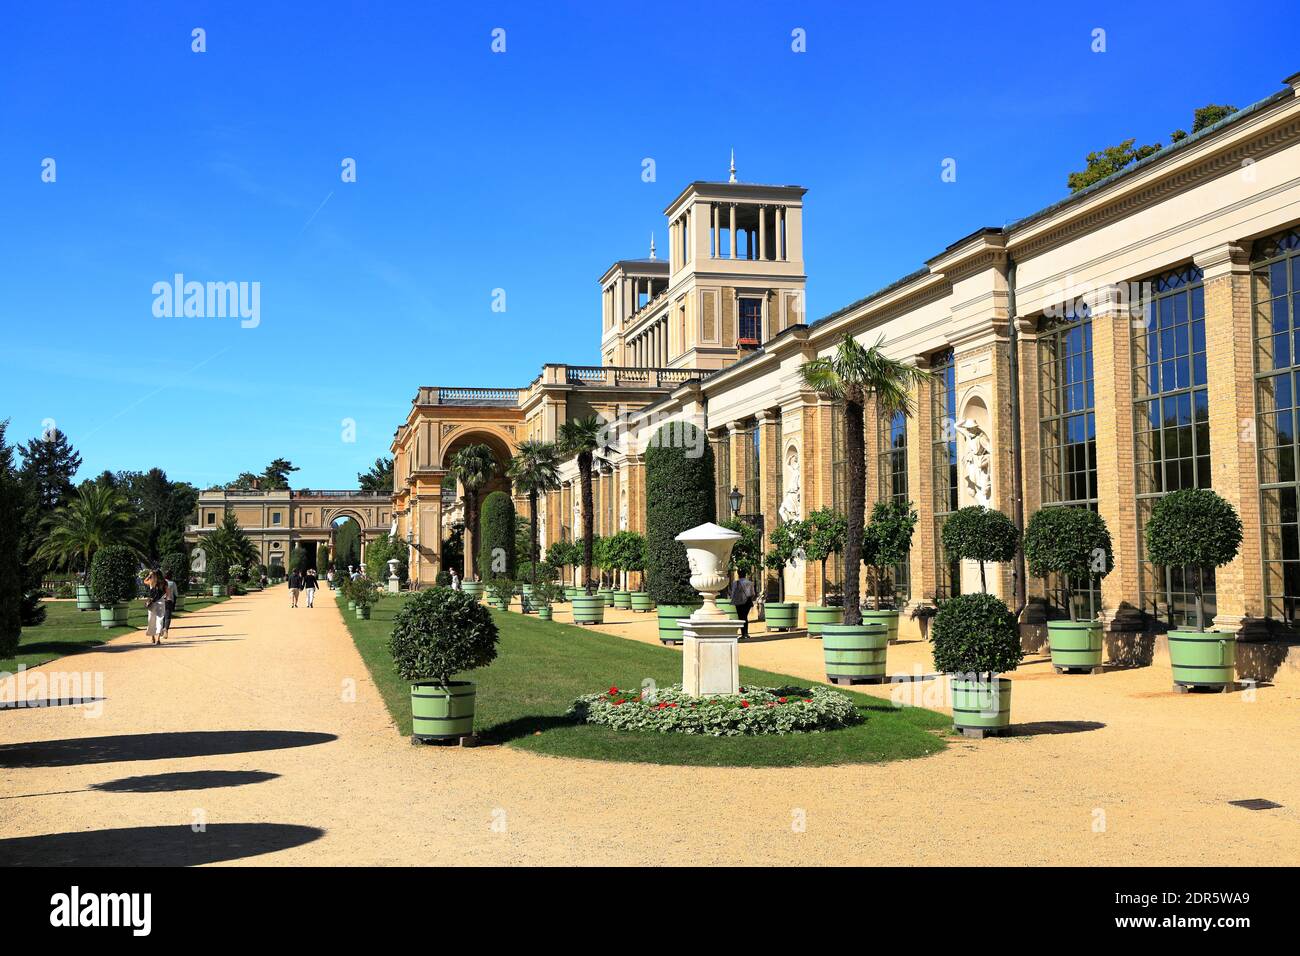 Potsdam, Germania - 18 settembre 2020: Visita del palazzo reale e del parco Sanssouci a Potsdam in una giornata di sole. Vista sul Palazzo dell'Orangerie. Foto Stock